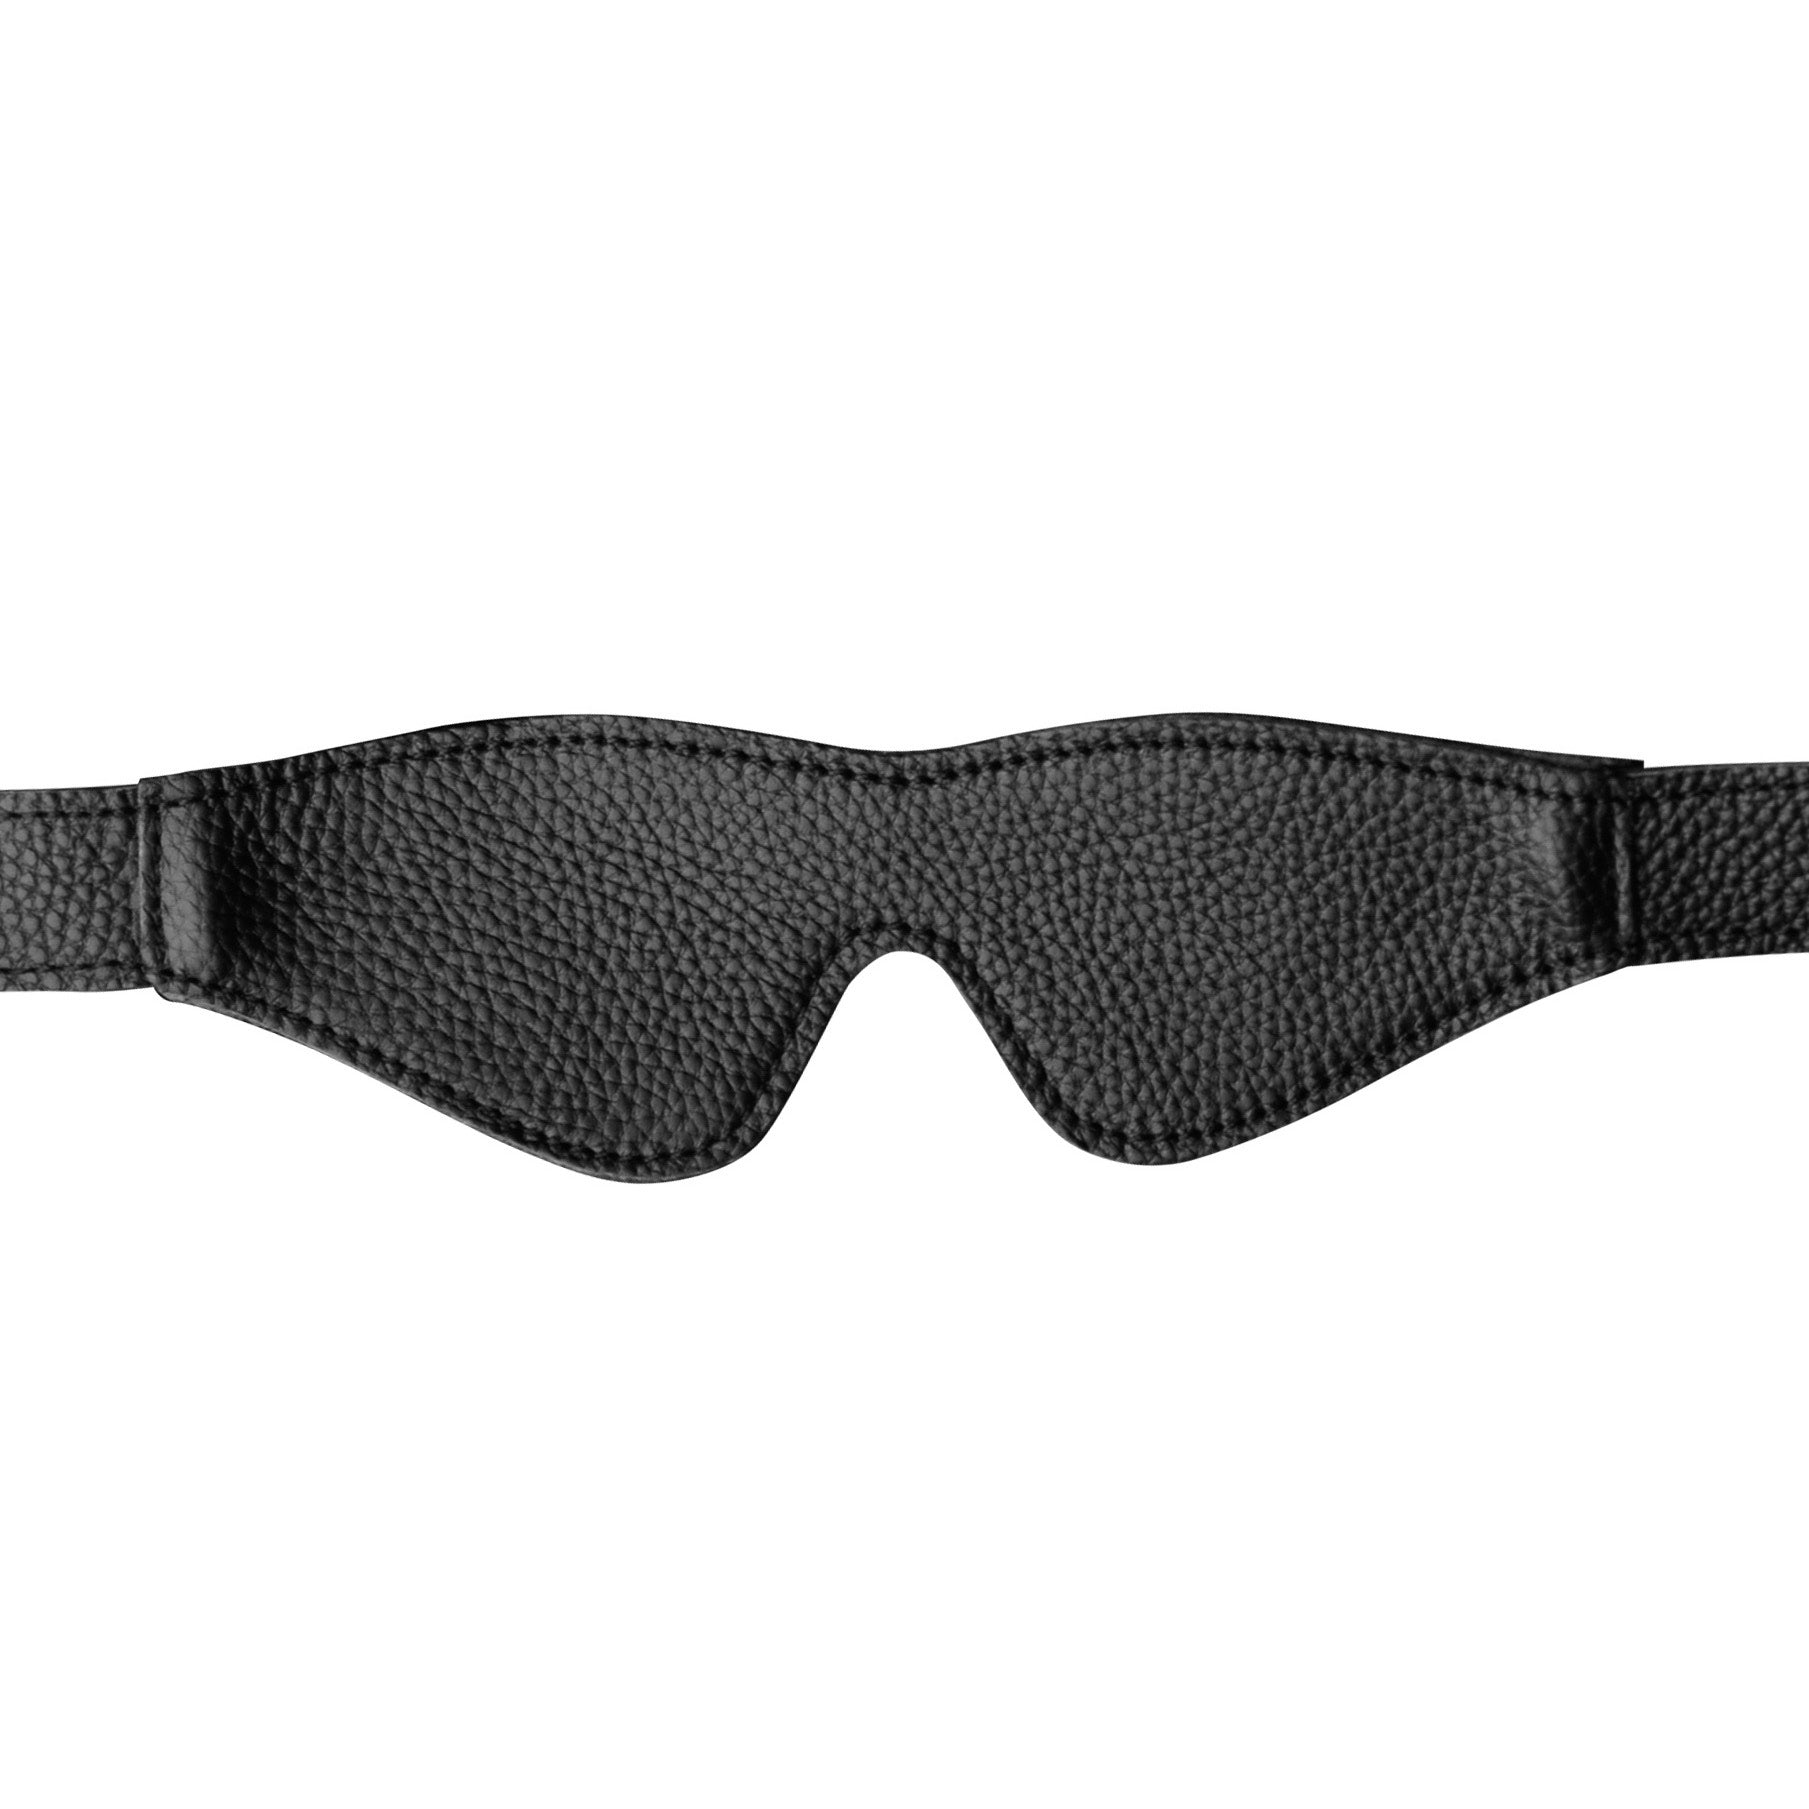 Onyx Leather Blindfold - UABDSM